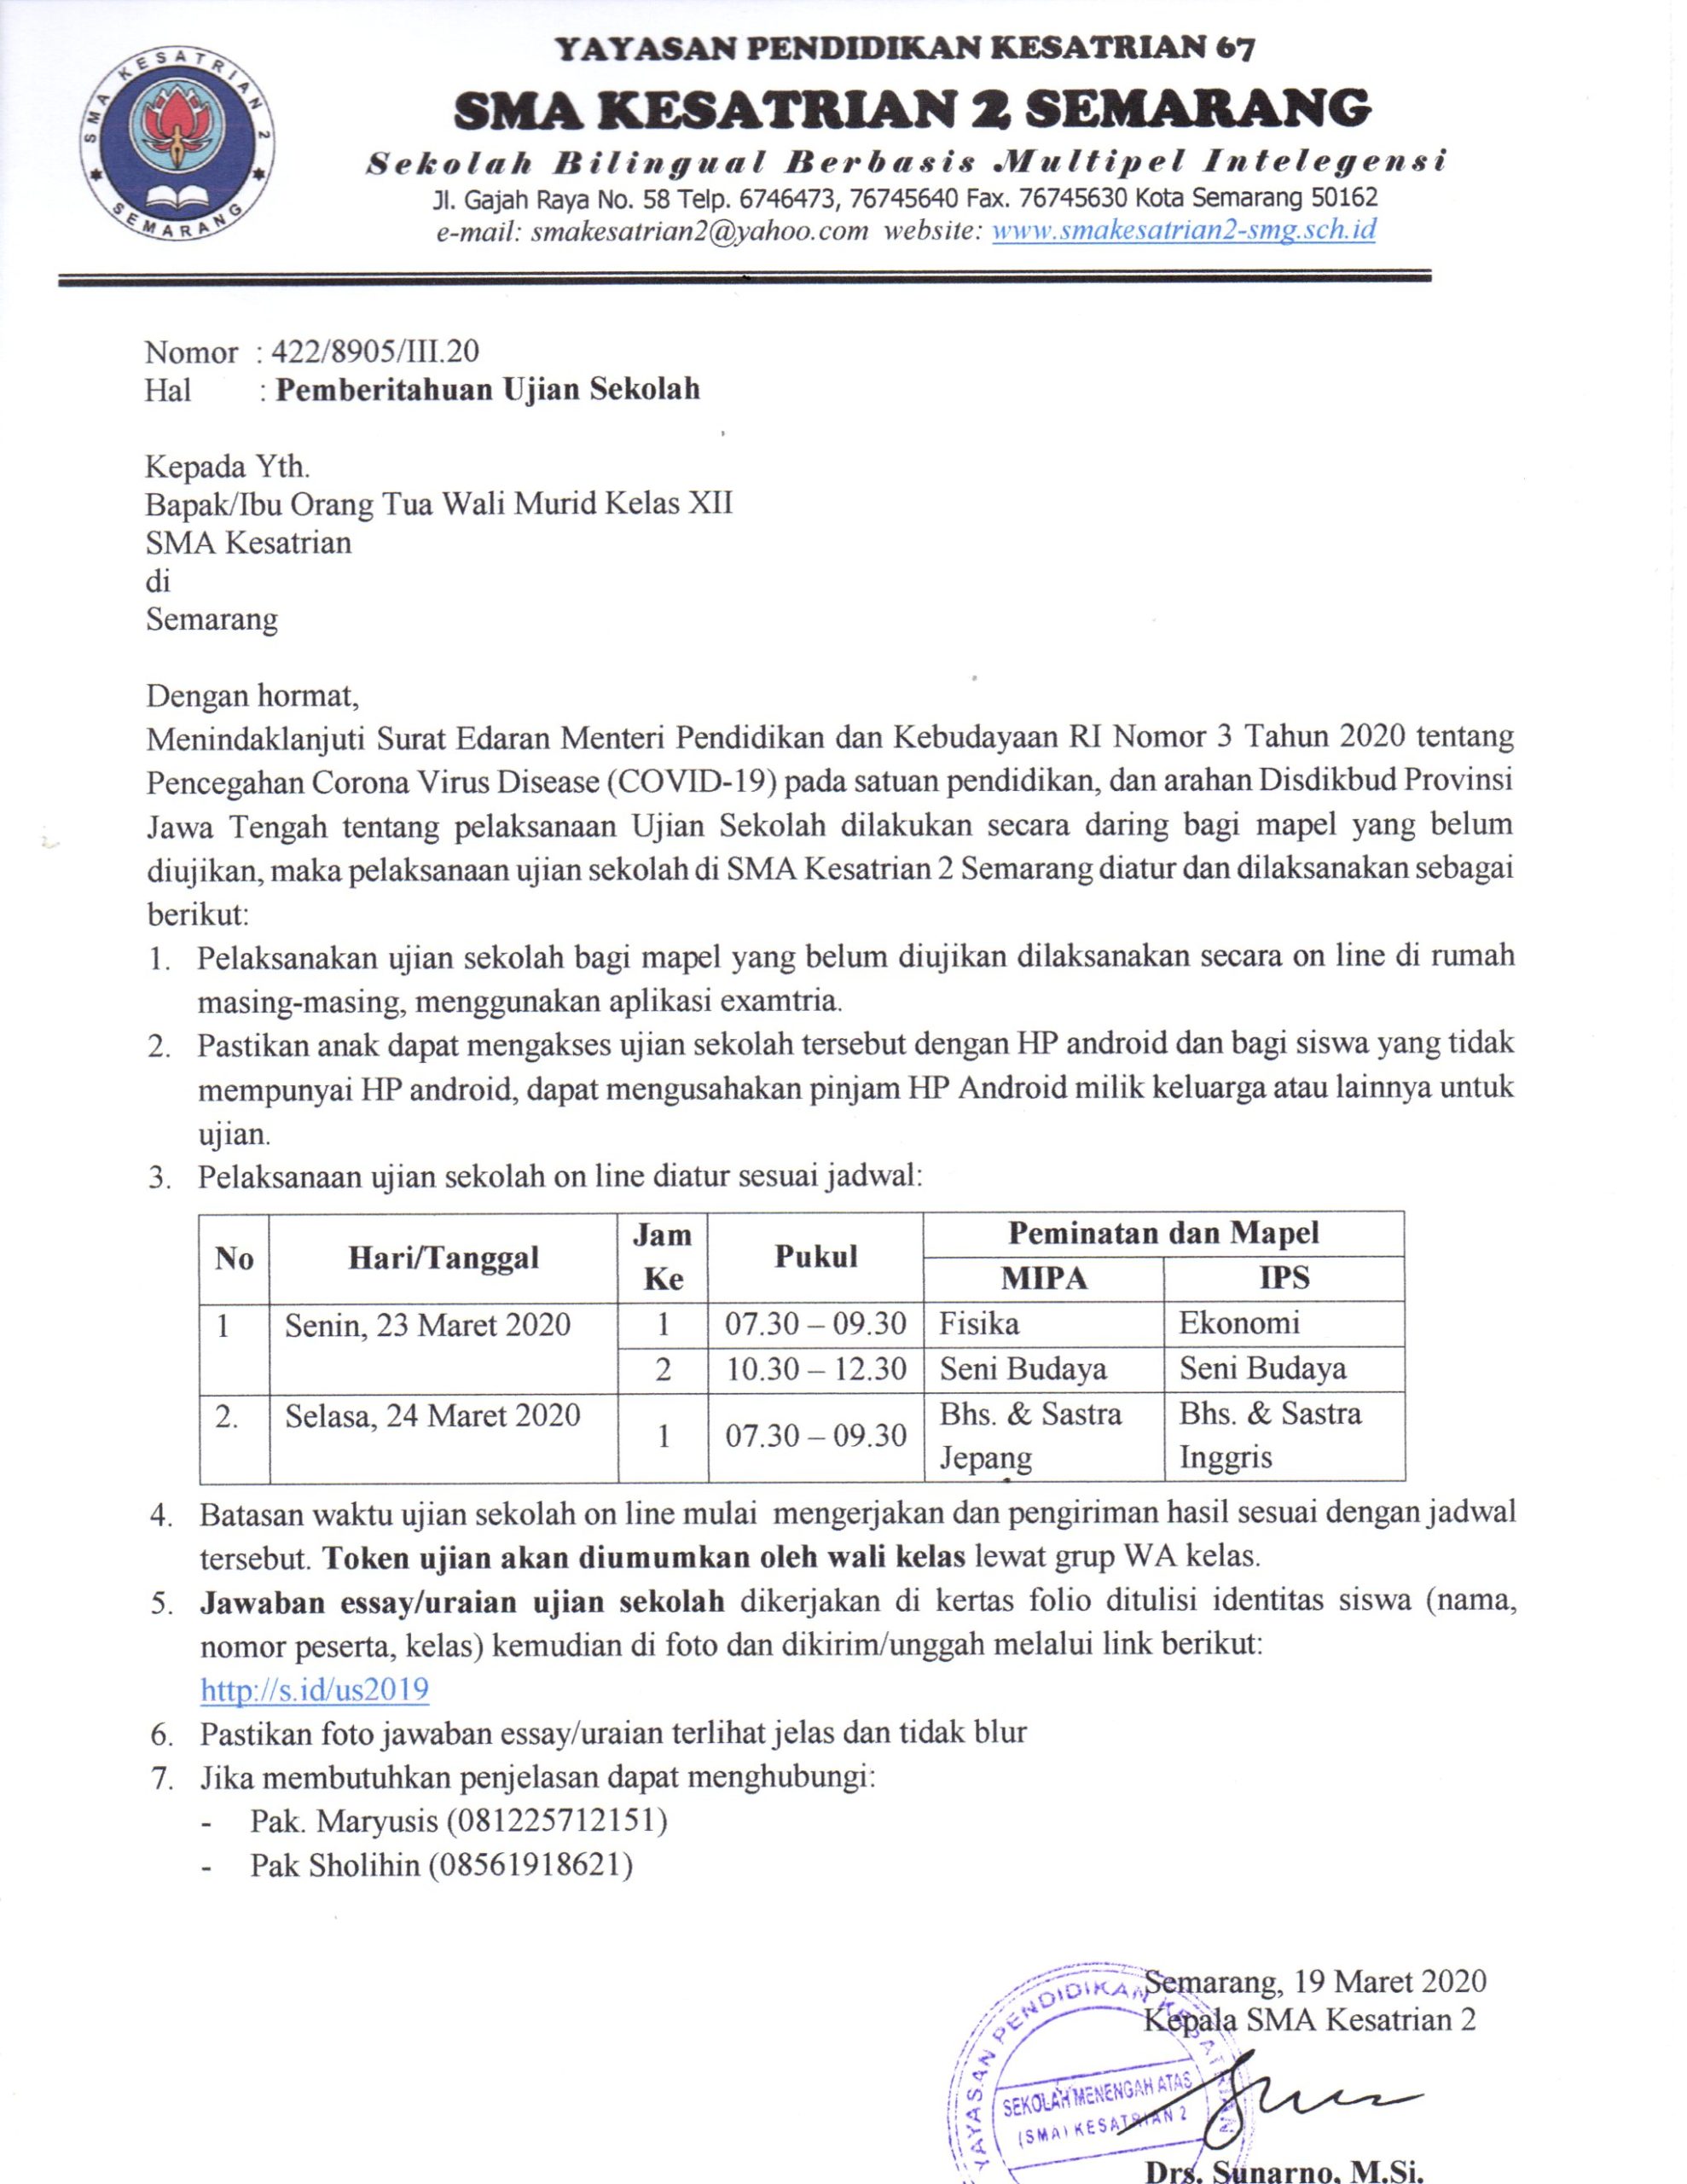 Pemberitahuan Ujian Sekolah Sma Kesatrian 2 Semarang